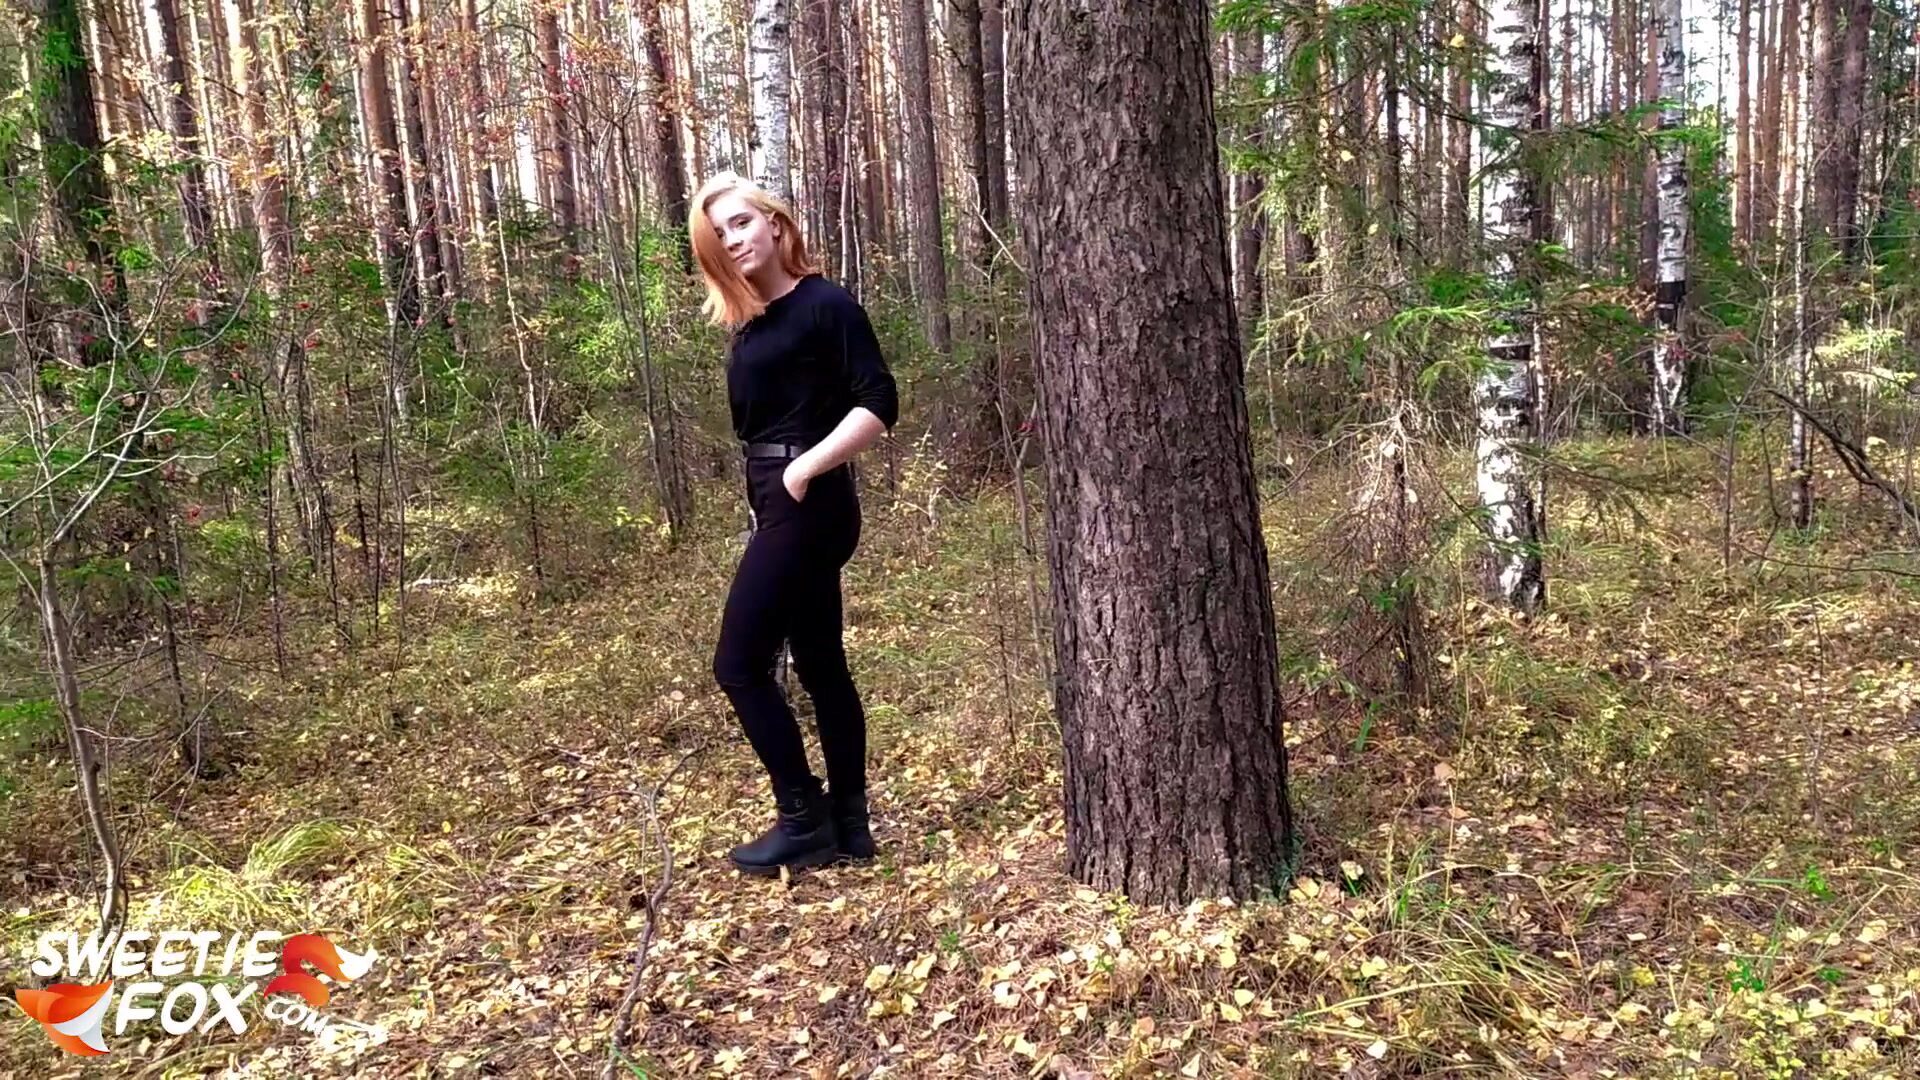 roodharige meid gezogen en hard geneukt in het bos